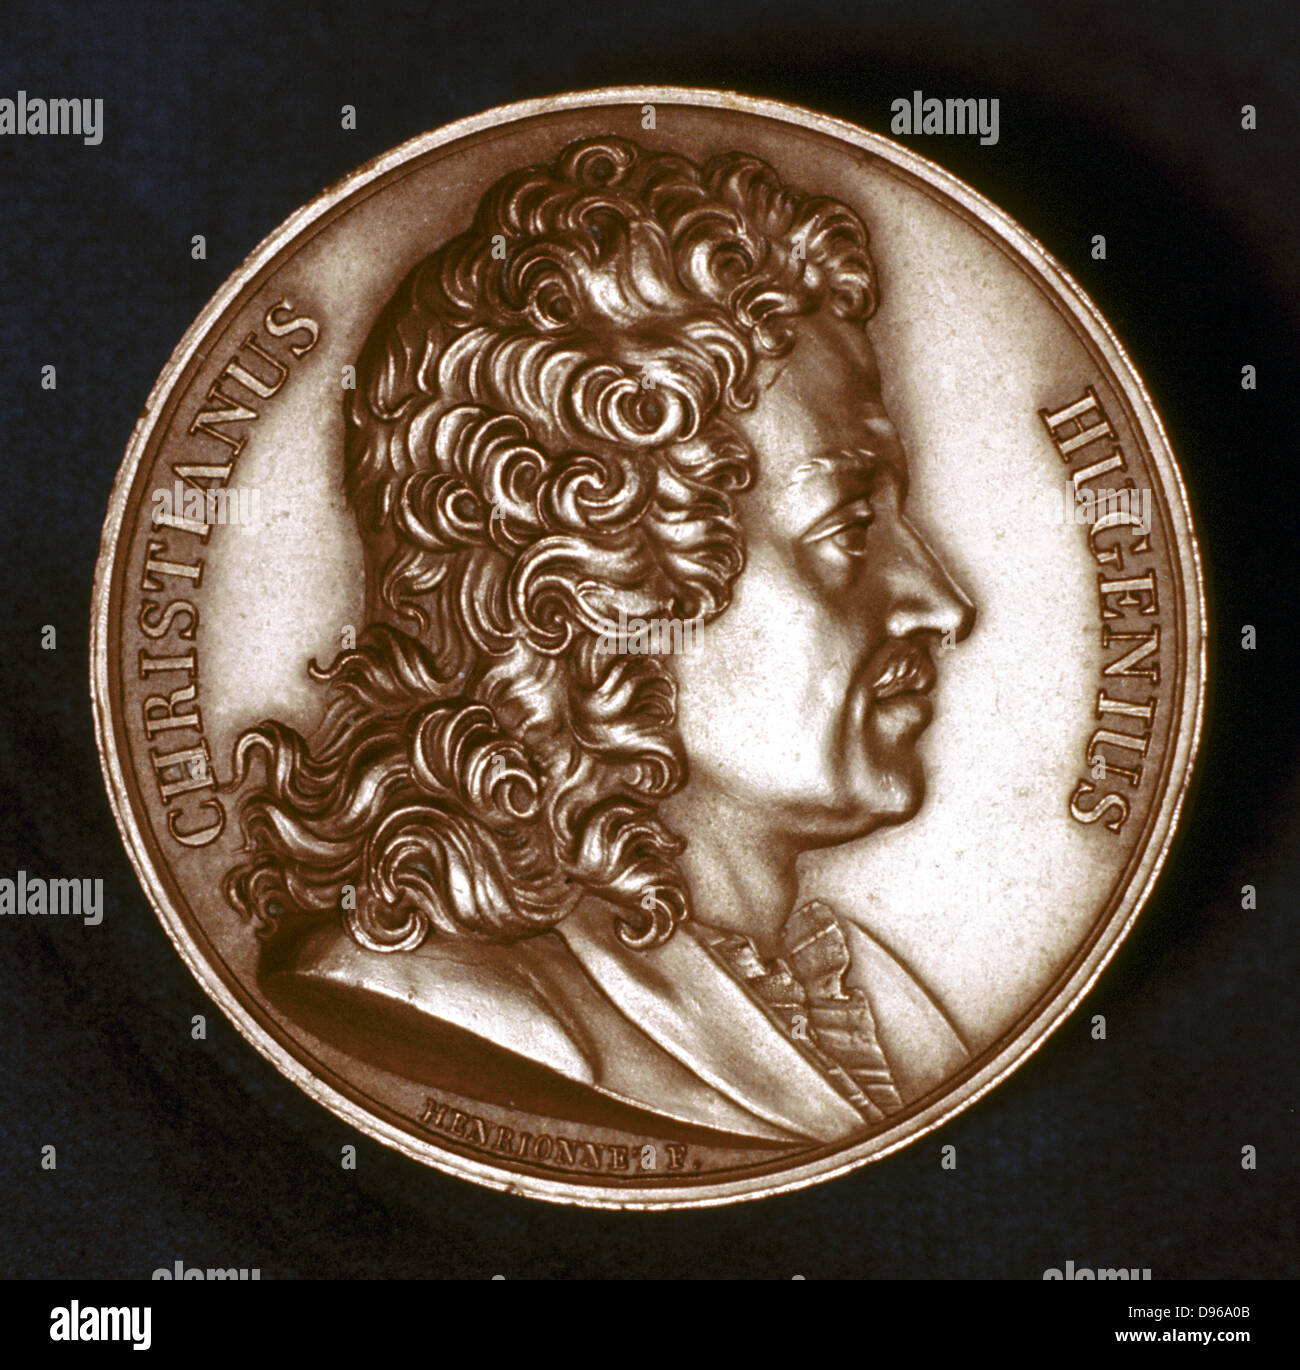 Christiaan Huyghens (1629-95) il fisico olandese. Orologio a pendolo: teoria ondulatoria della luce. Ritratto da complementare della medaglia commemorativa Foto Stock